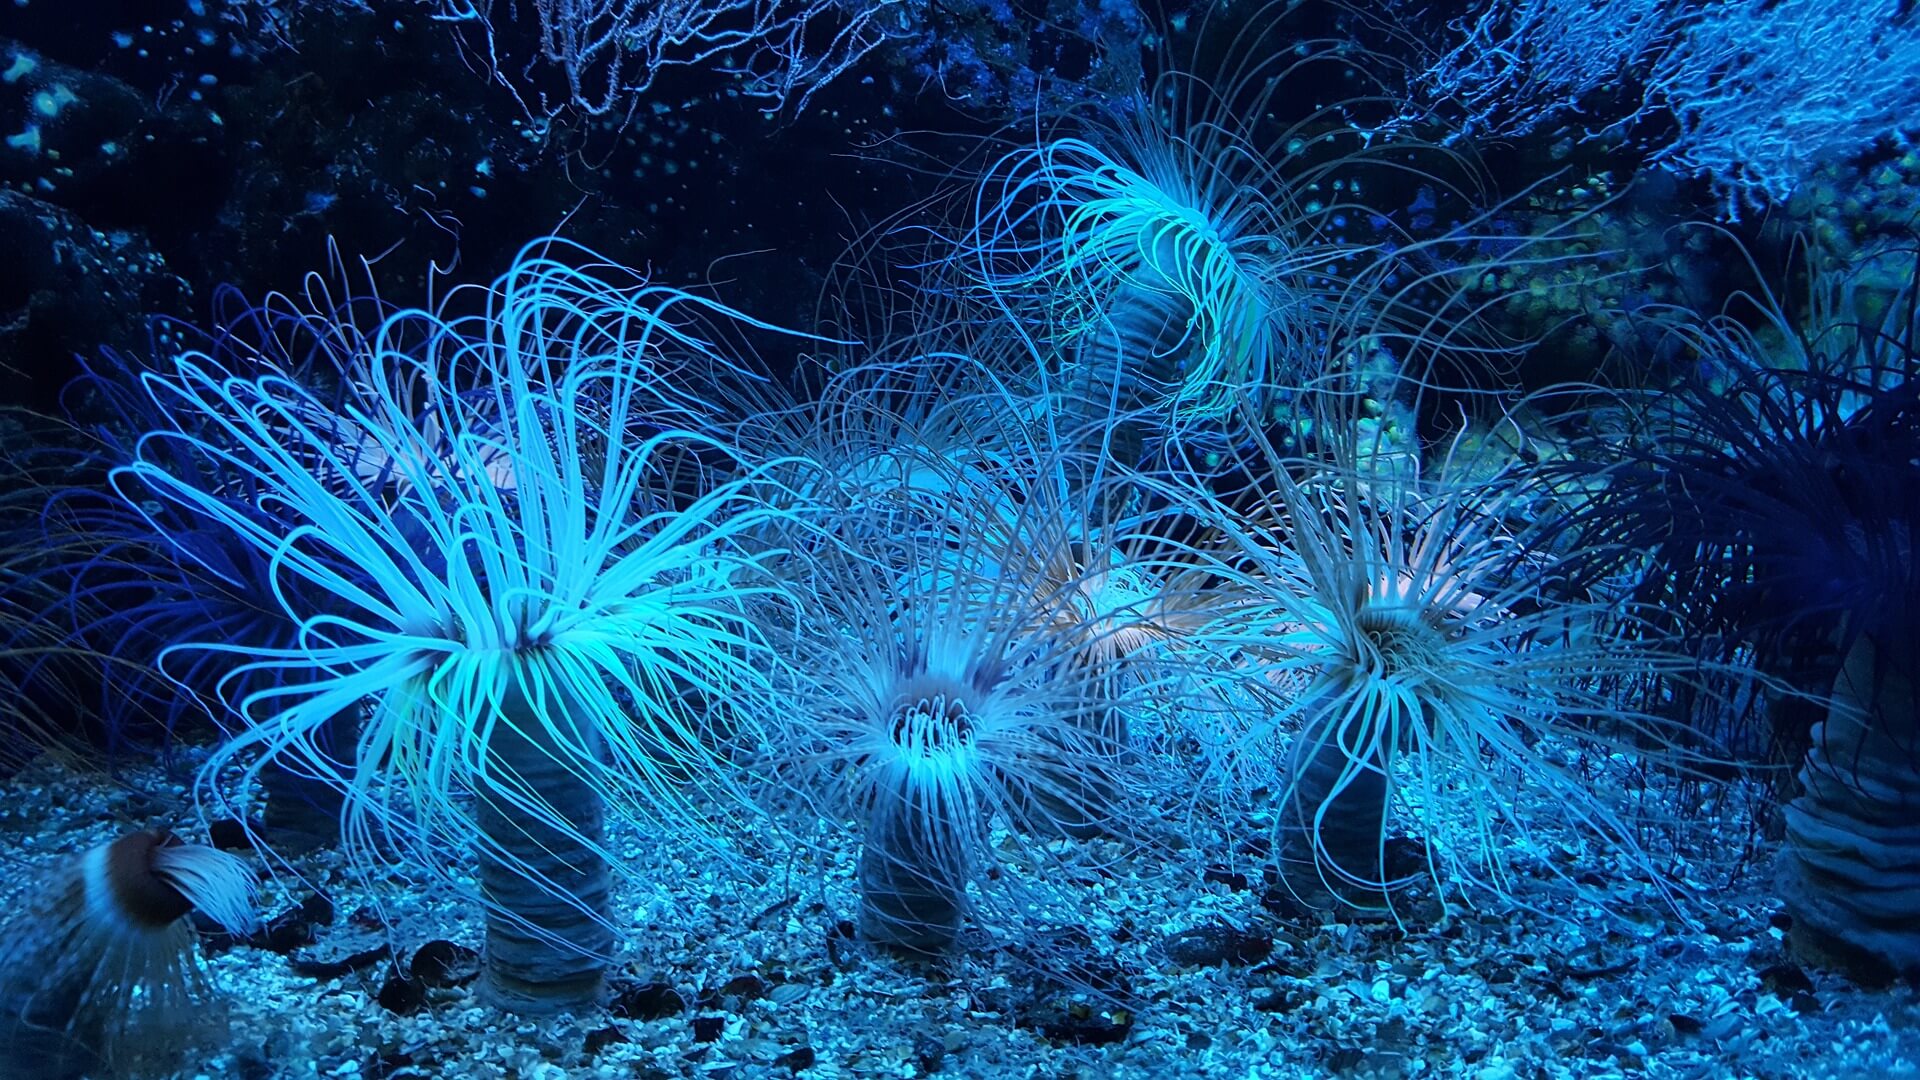 L'anemone di mare è uno degli animali invertebrati classificati come cnidari.